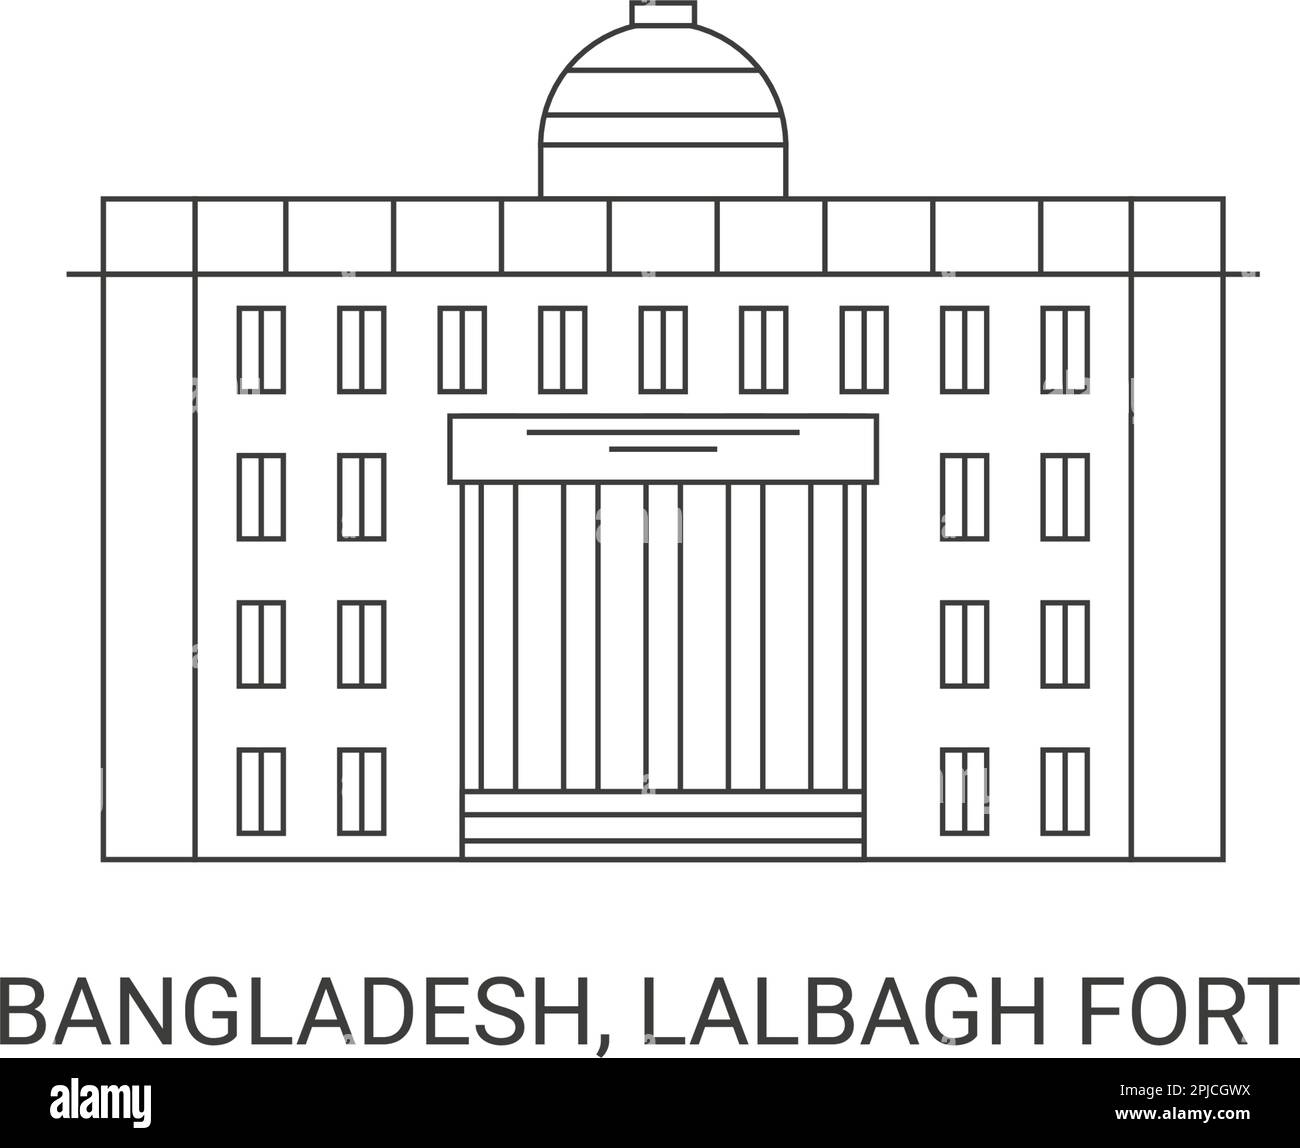 Bangladesch, Fort Lalbagh, Reise-Wahrzeichen-Vektordarstellung Stock Vektor